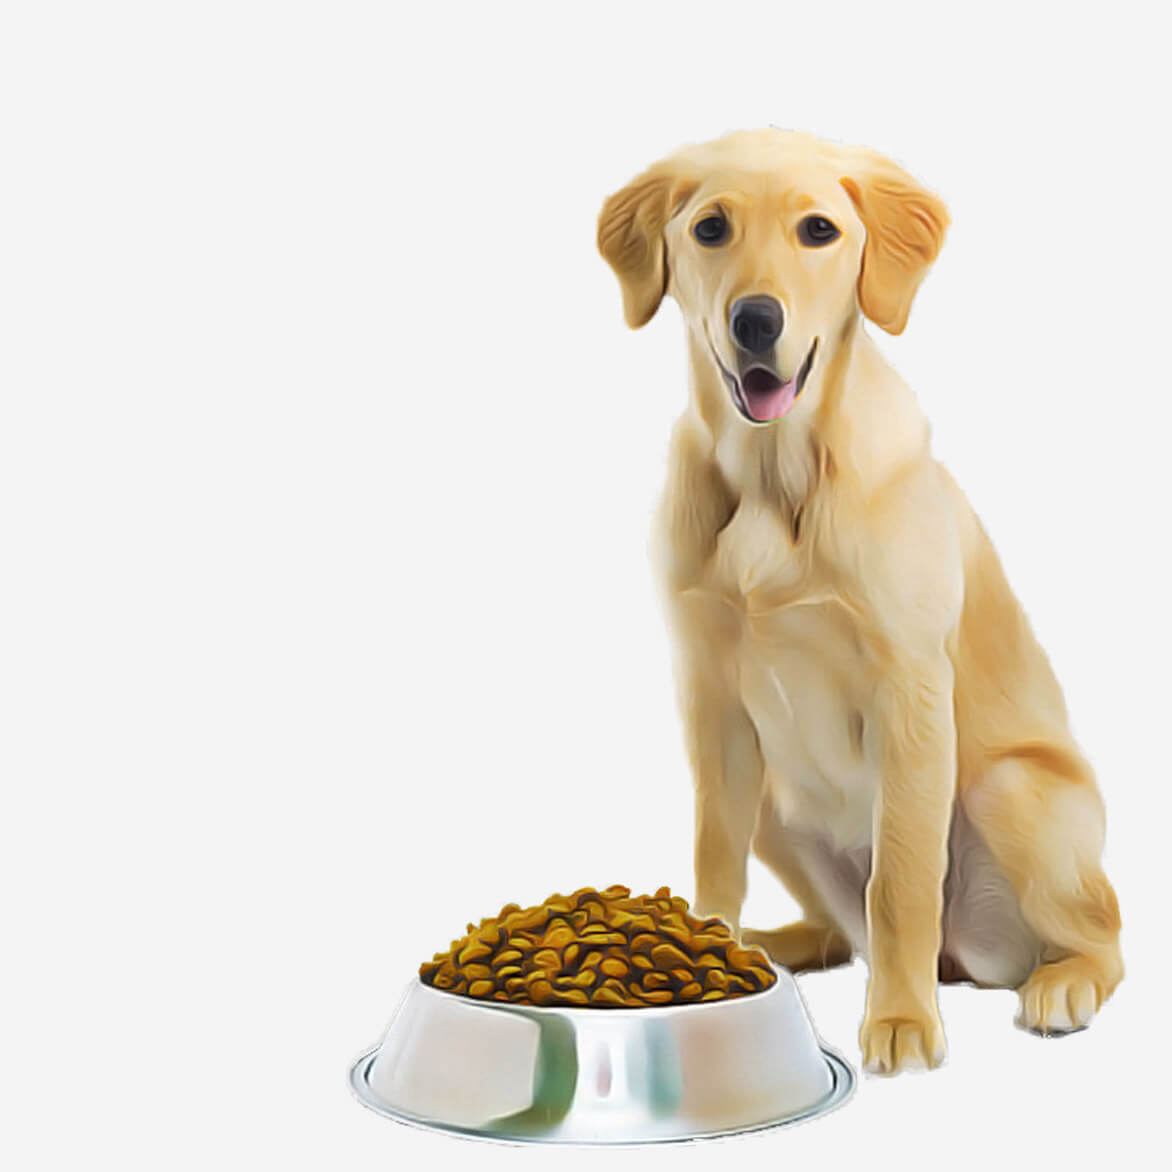 K9 Adult Dog Food – 5 KG pets-park-pk